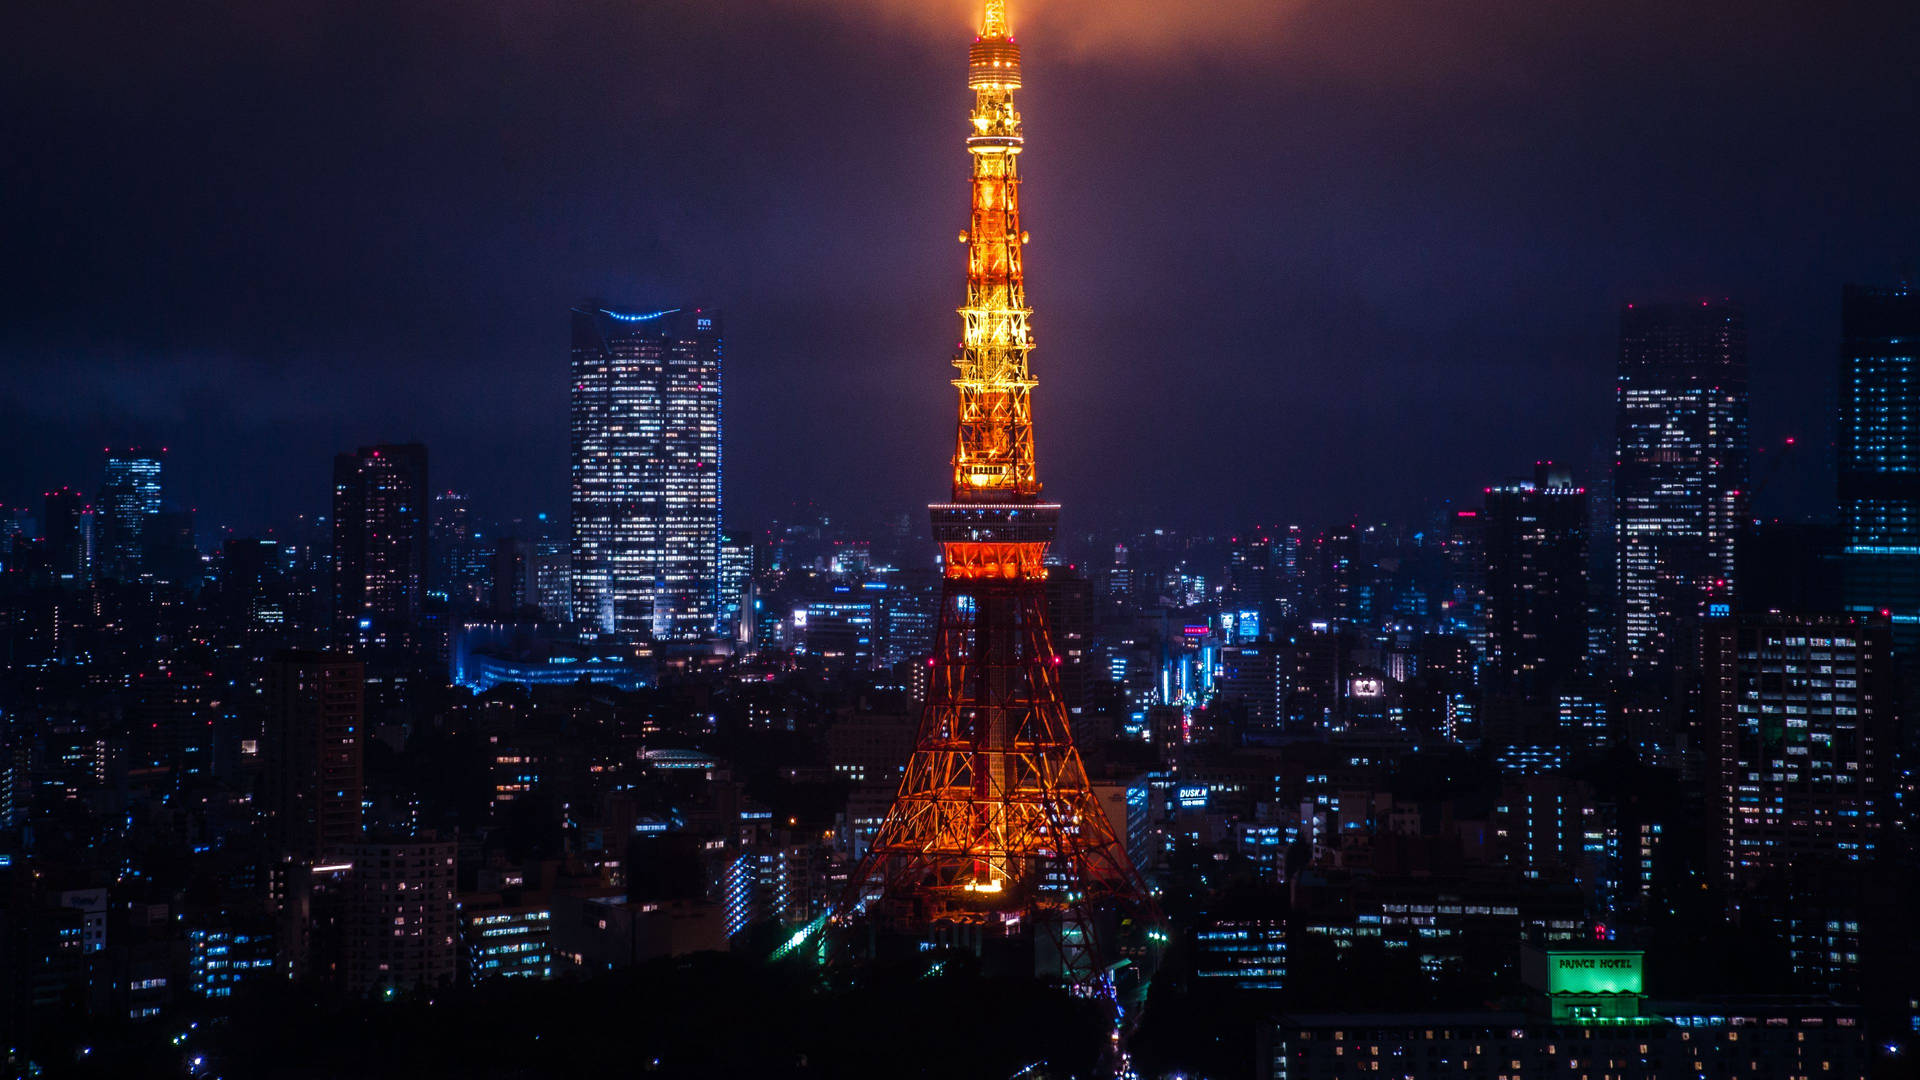 Tokyotower Bei Nacht Beleuchtet Wallpaper